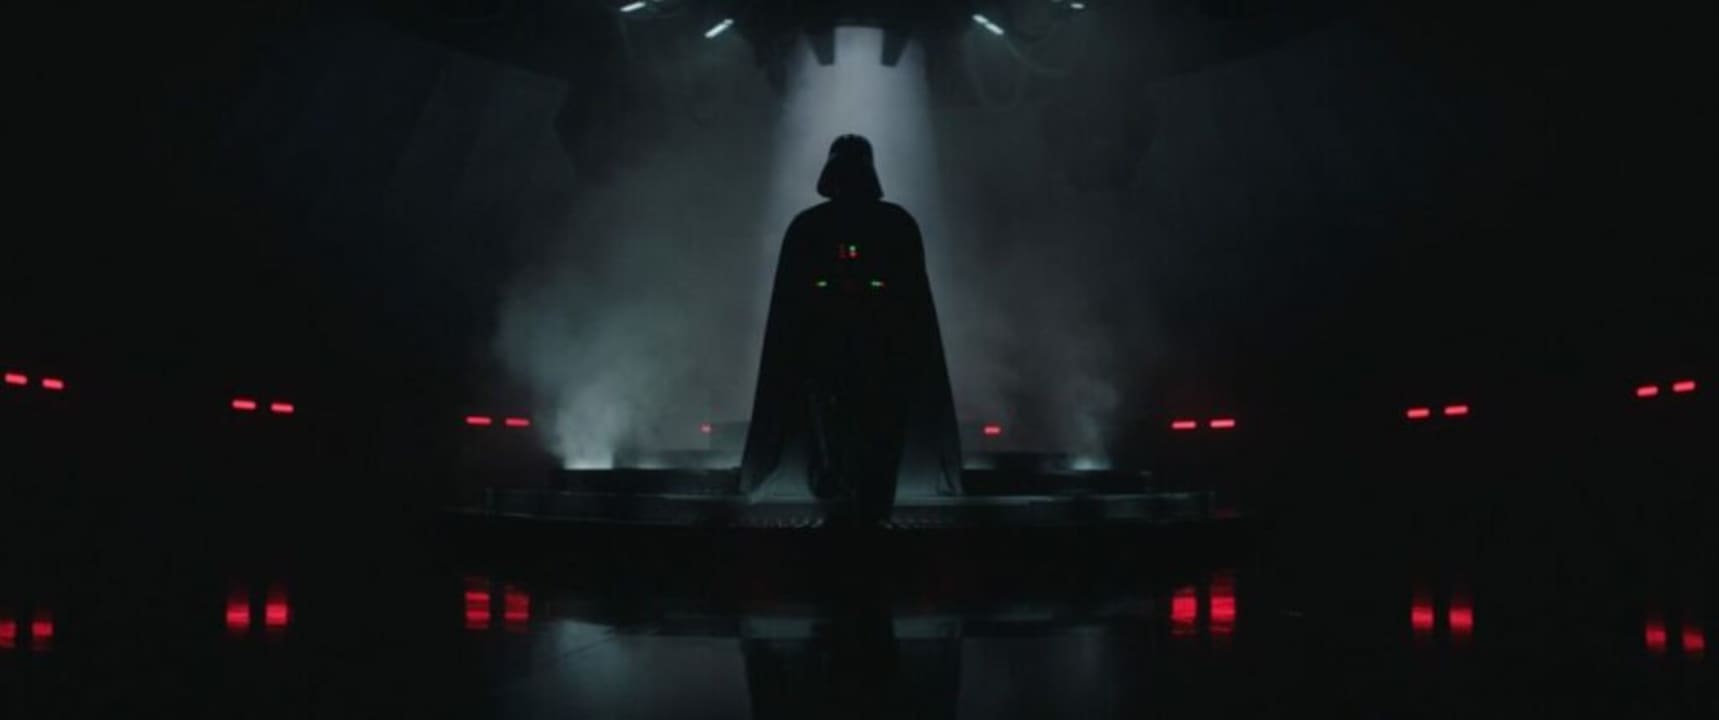 The Force awakens as Obi-Wan Kenobi releases on Disney+